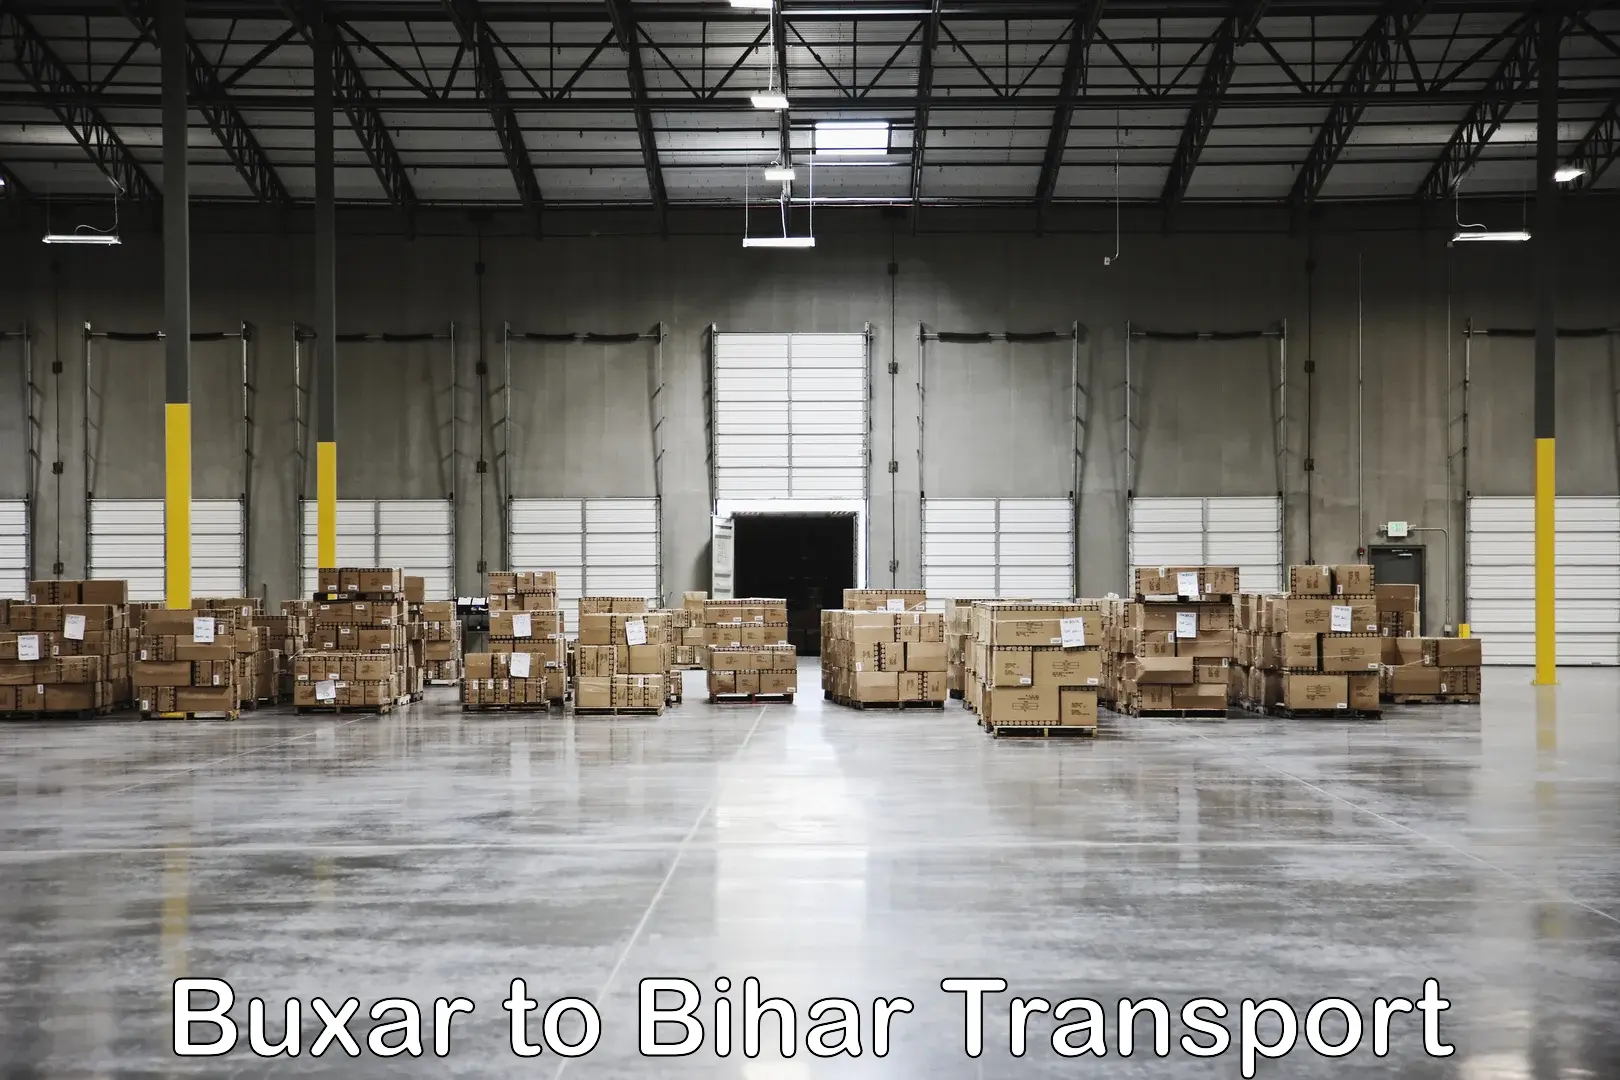 Shipping partner Buxar to Bhabua